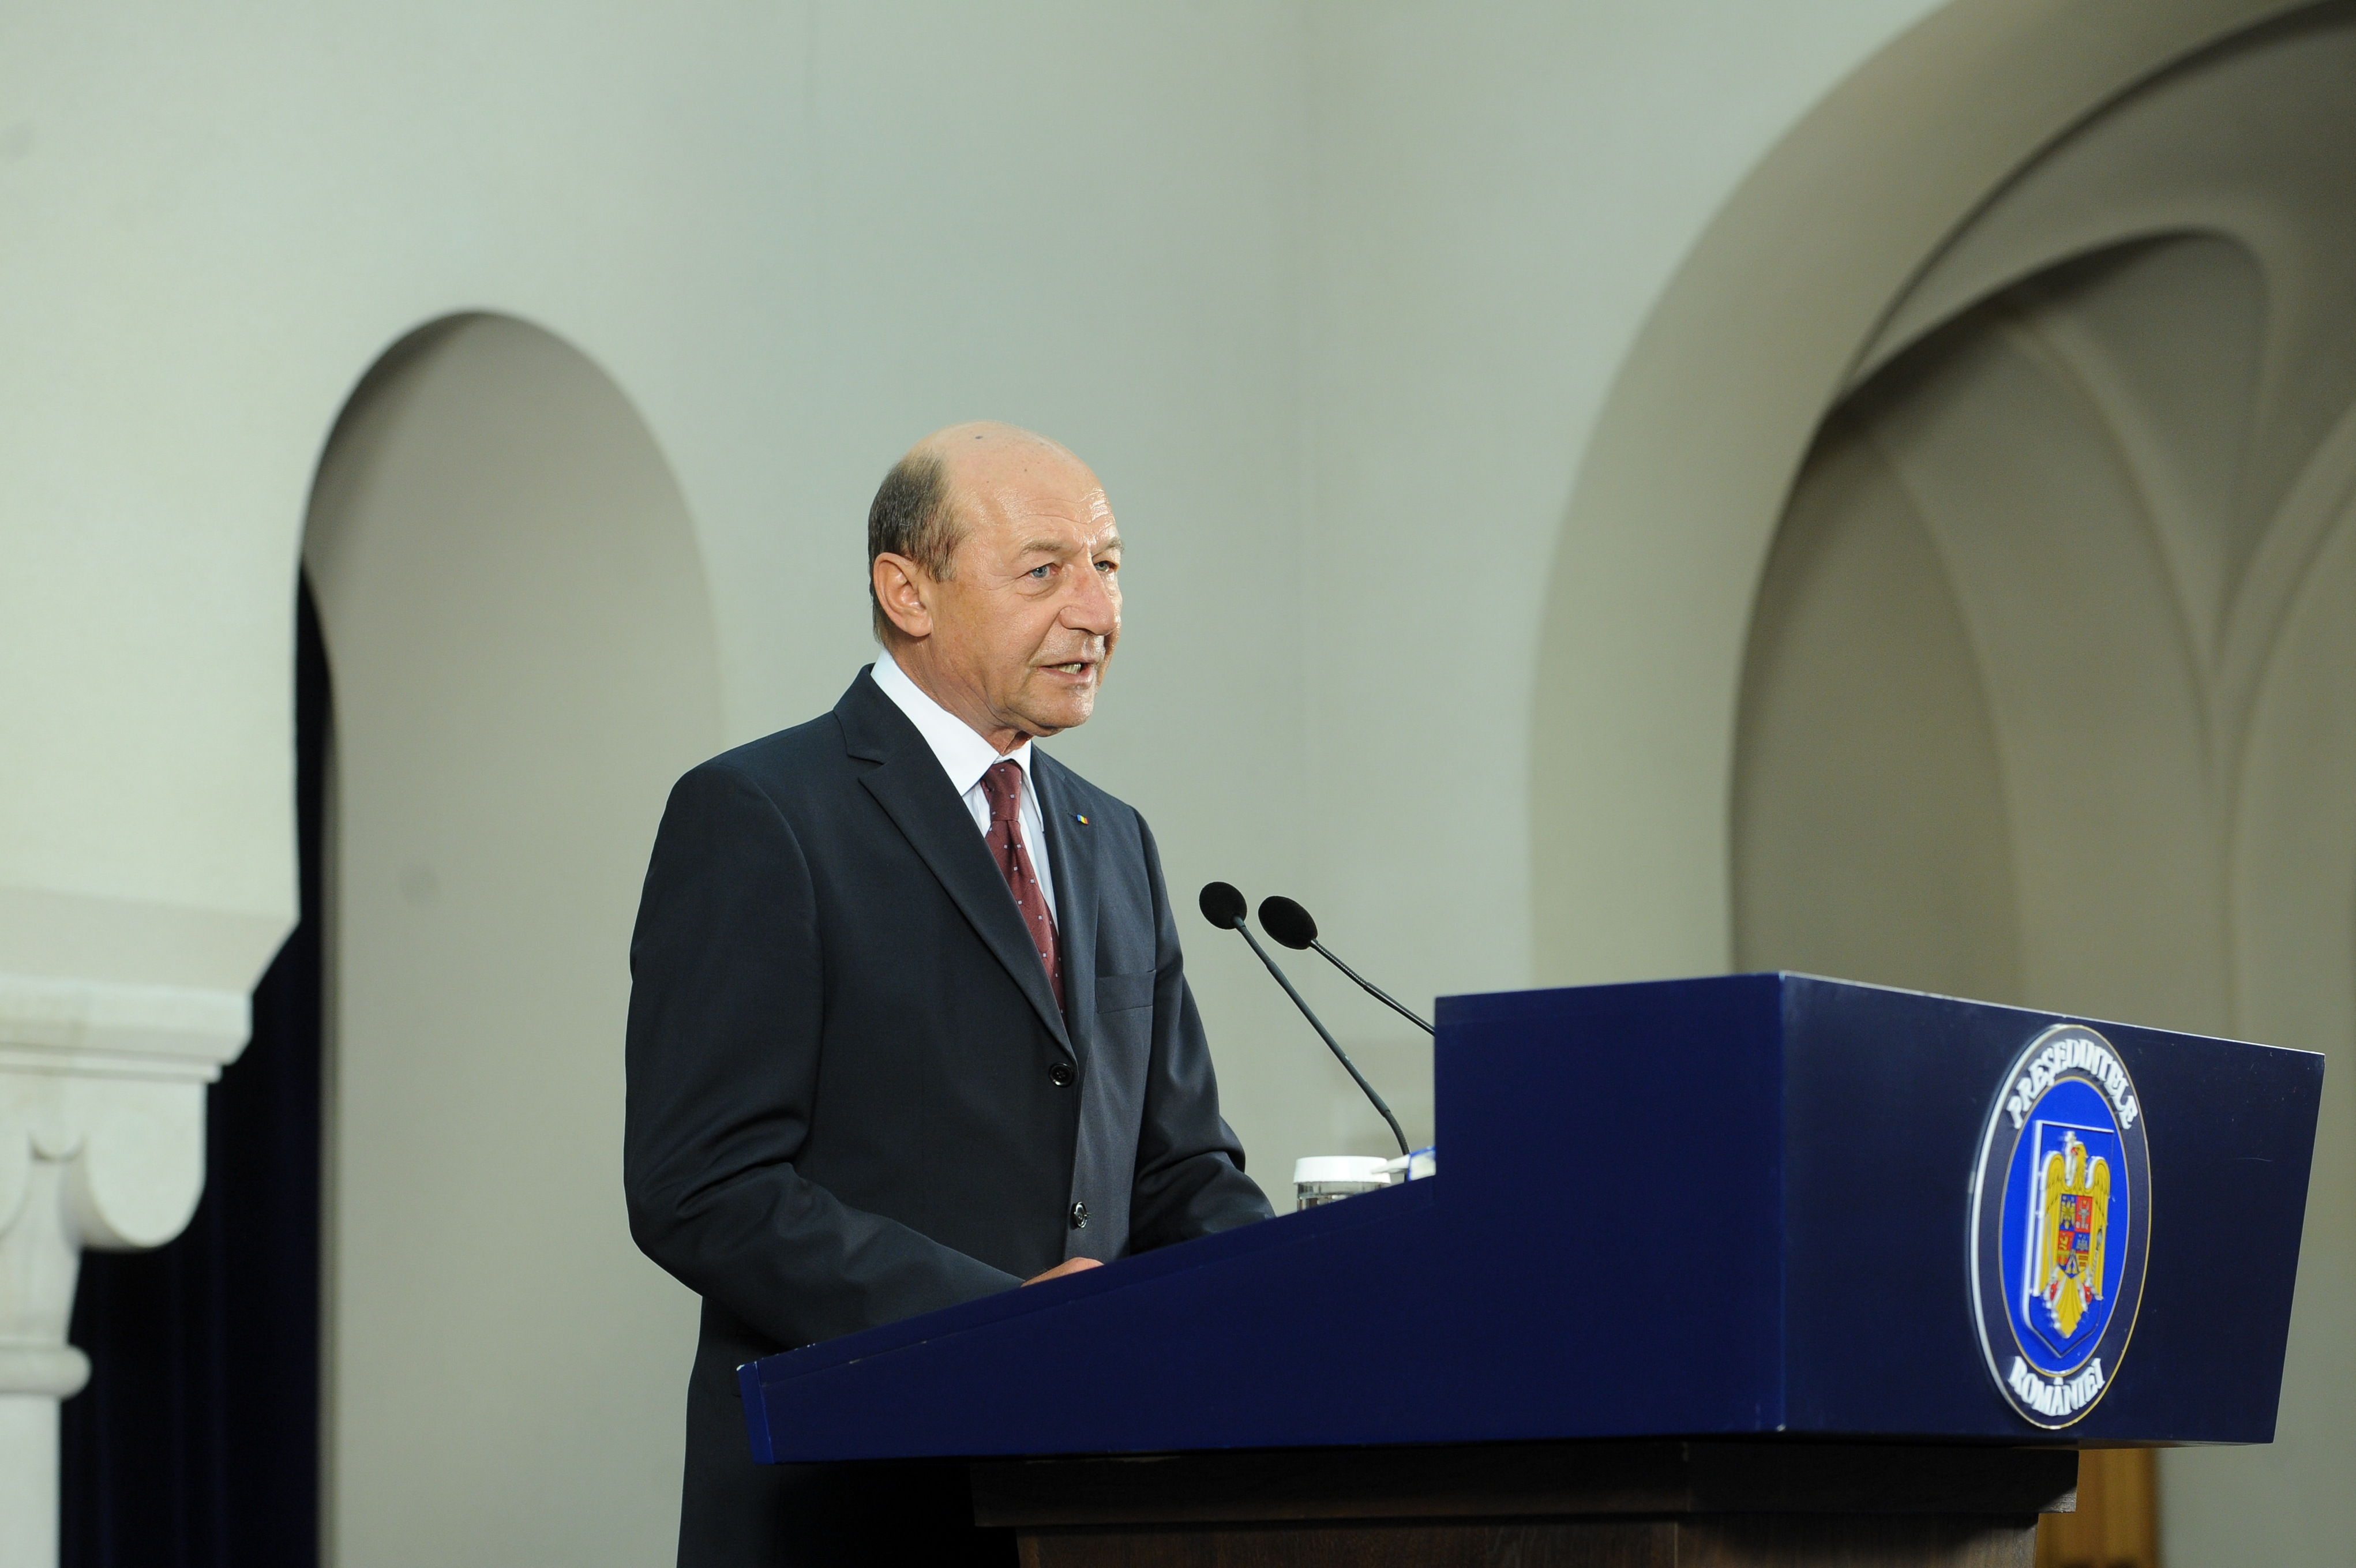 Reacţia preşedintelui Băsescu la scandalul în care este implicat fratele său: Sper că varianta pe care mi-a spus-o e reală, voi crede în varianta justiţiei